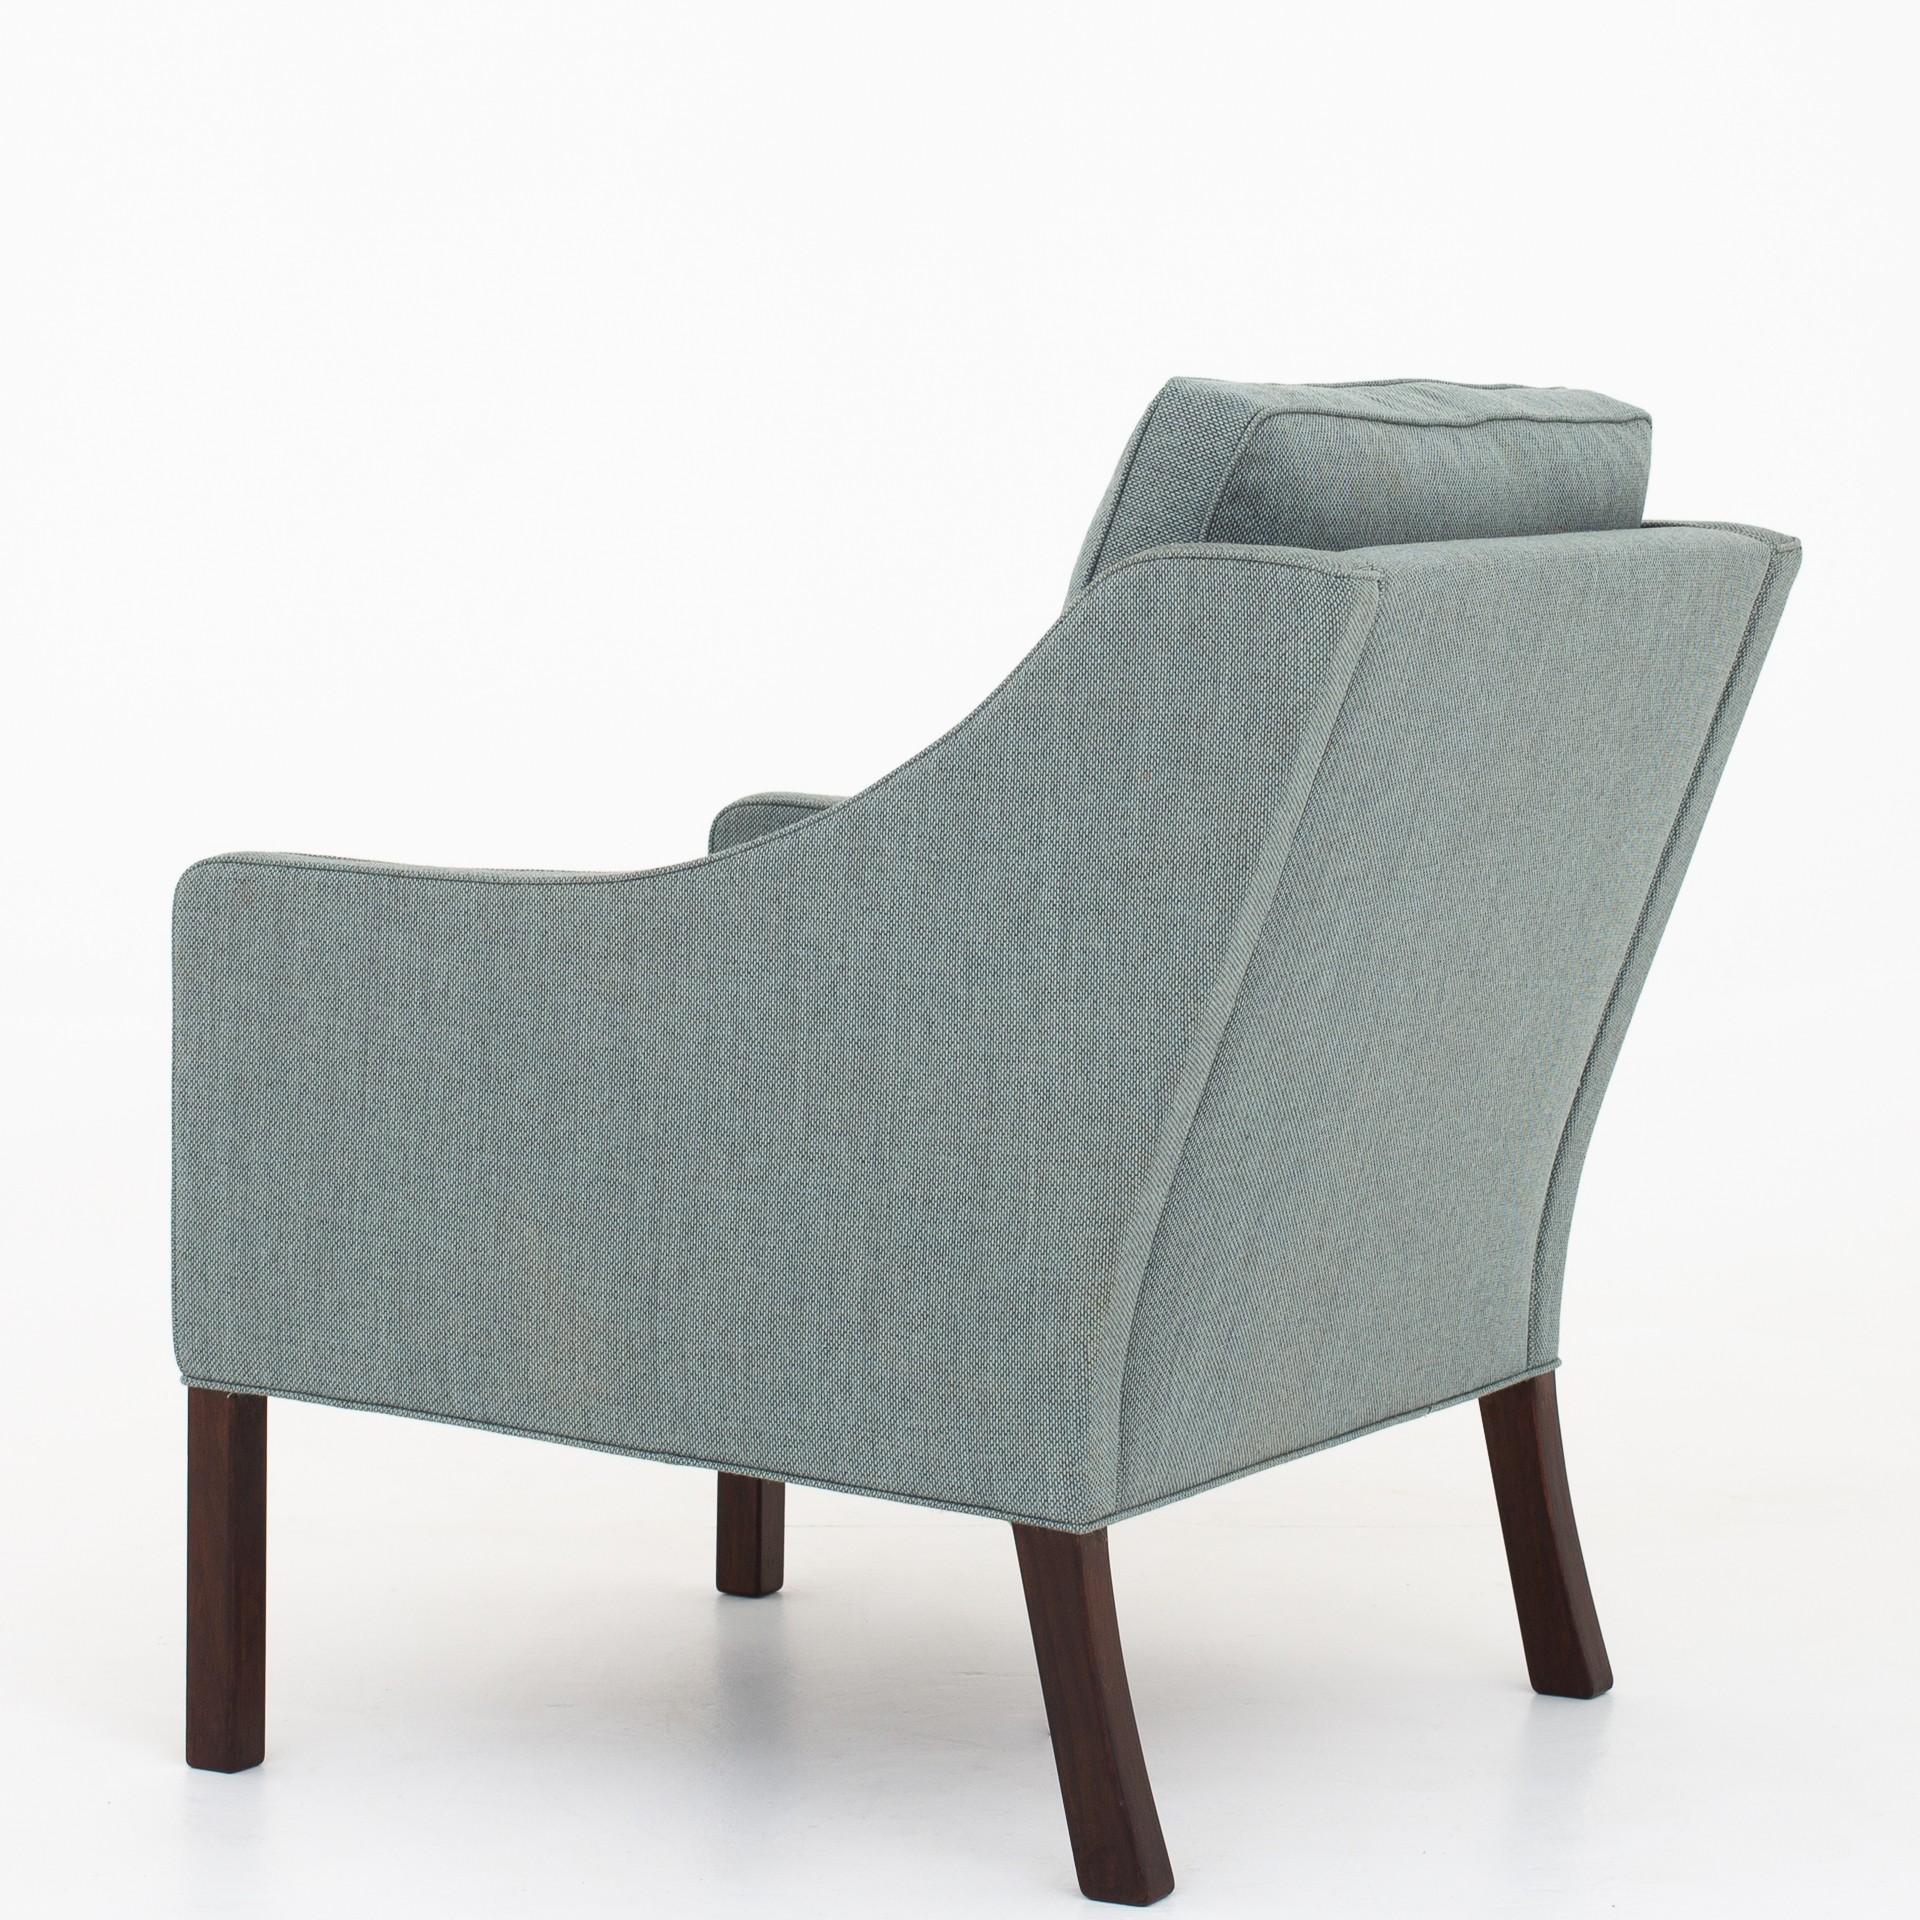 BM 2207 - Sessel mit Stoff von Kvadrat (Re-Wool 868) und Beinen aus gebeizter Eiche. Hersteller Fredericia Furniture.